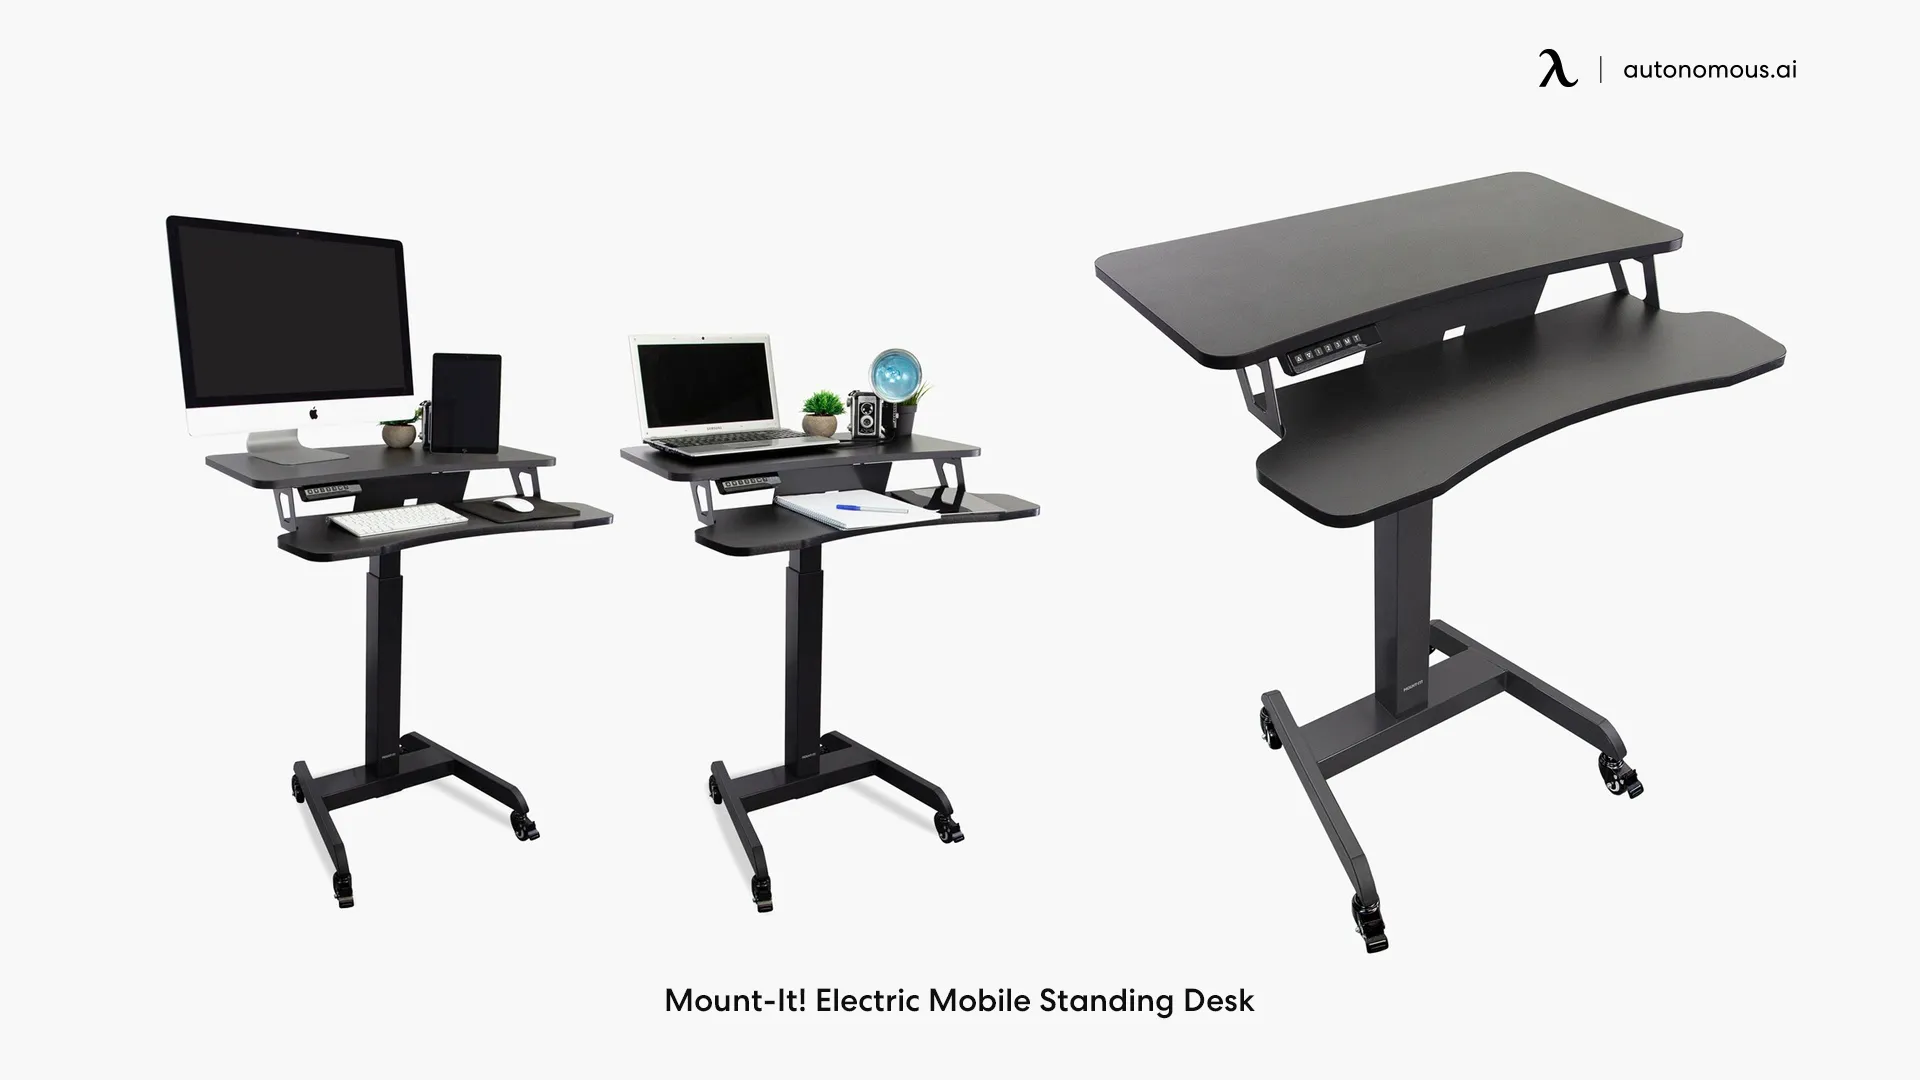 Mount-It! Electric standing desk on wheels